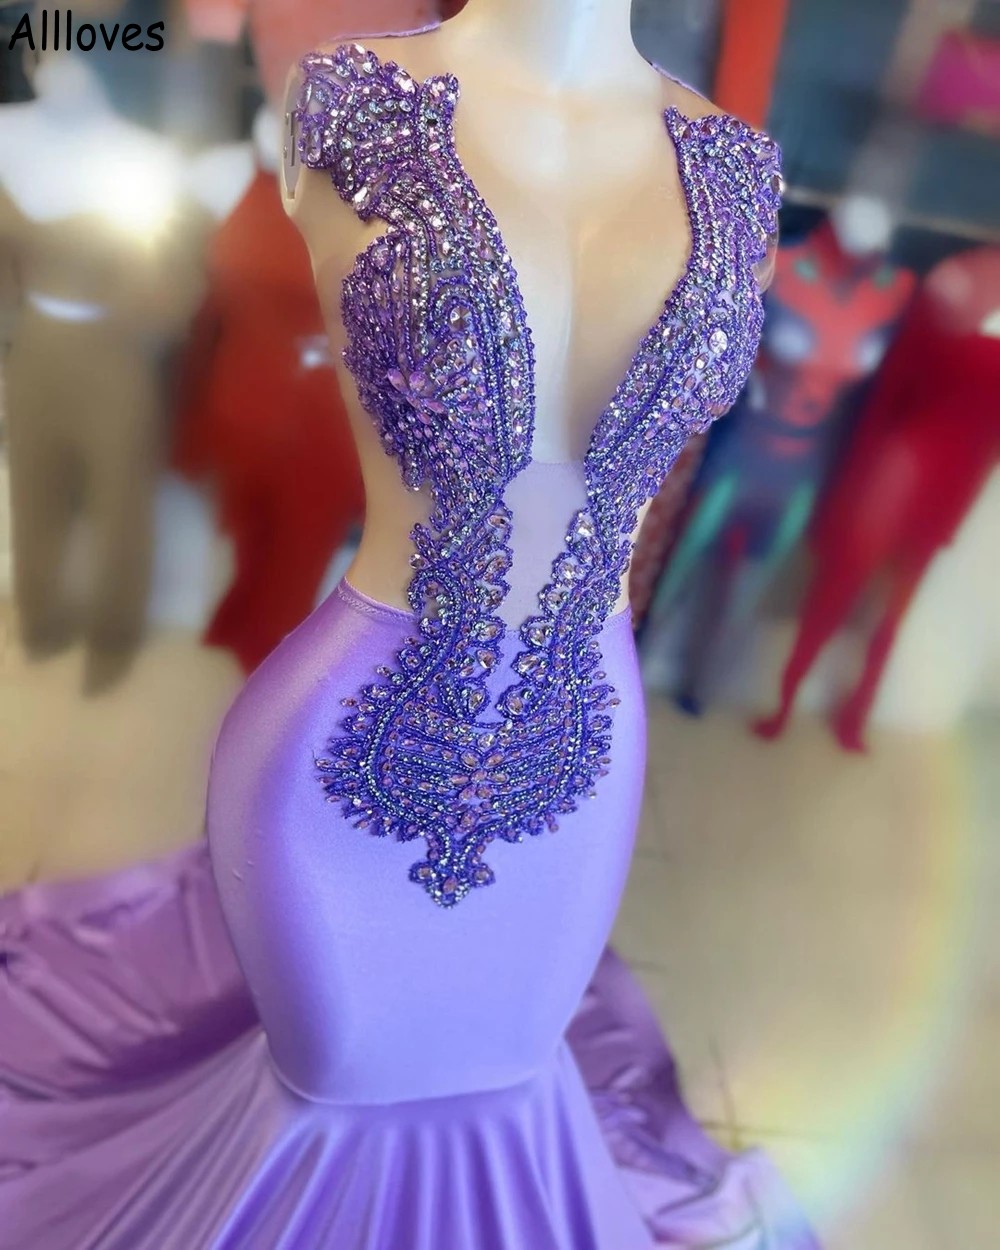 بلورات Sparkle Lavender Mermaid Dresses Prom Lunging V الرقبة العربية العربية Aso Ebi الرسمية للحفلات تنورة زائد الحجم نساء ثوب الاستقبال CL1802